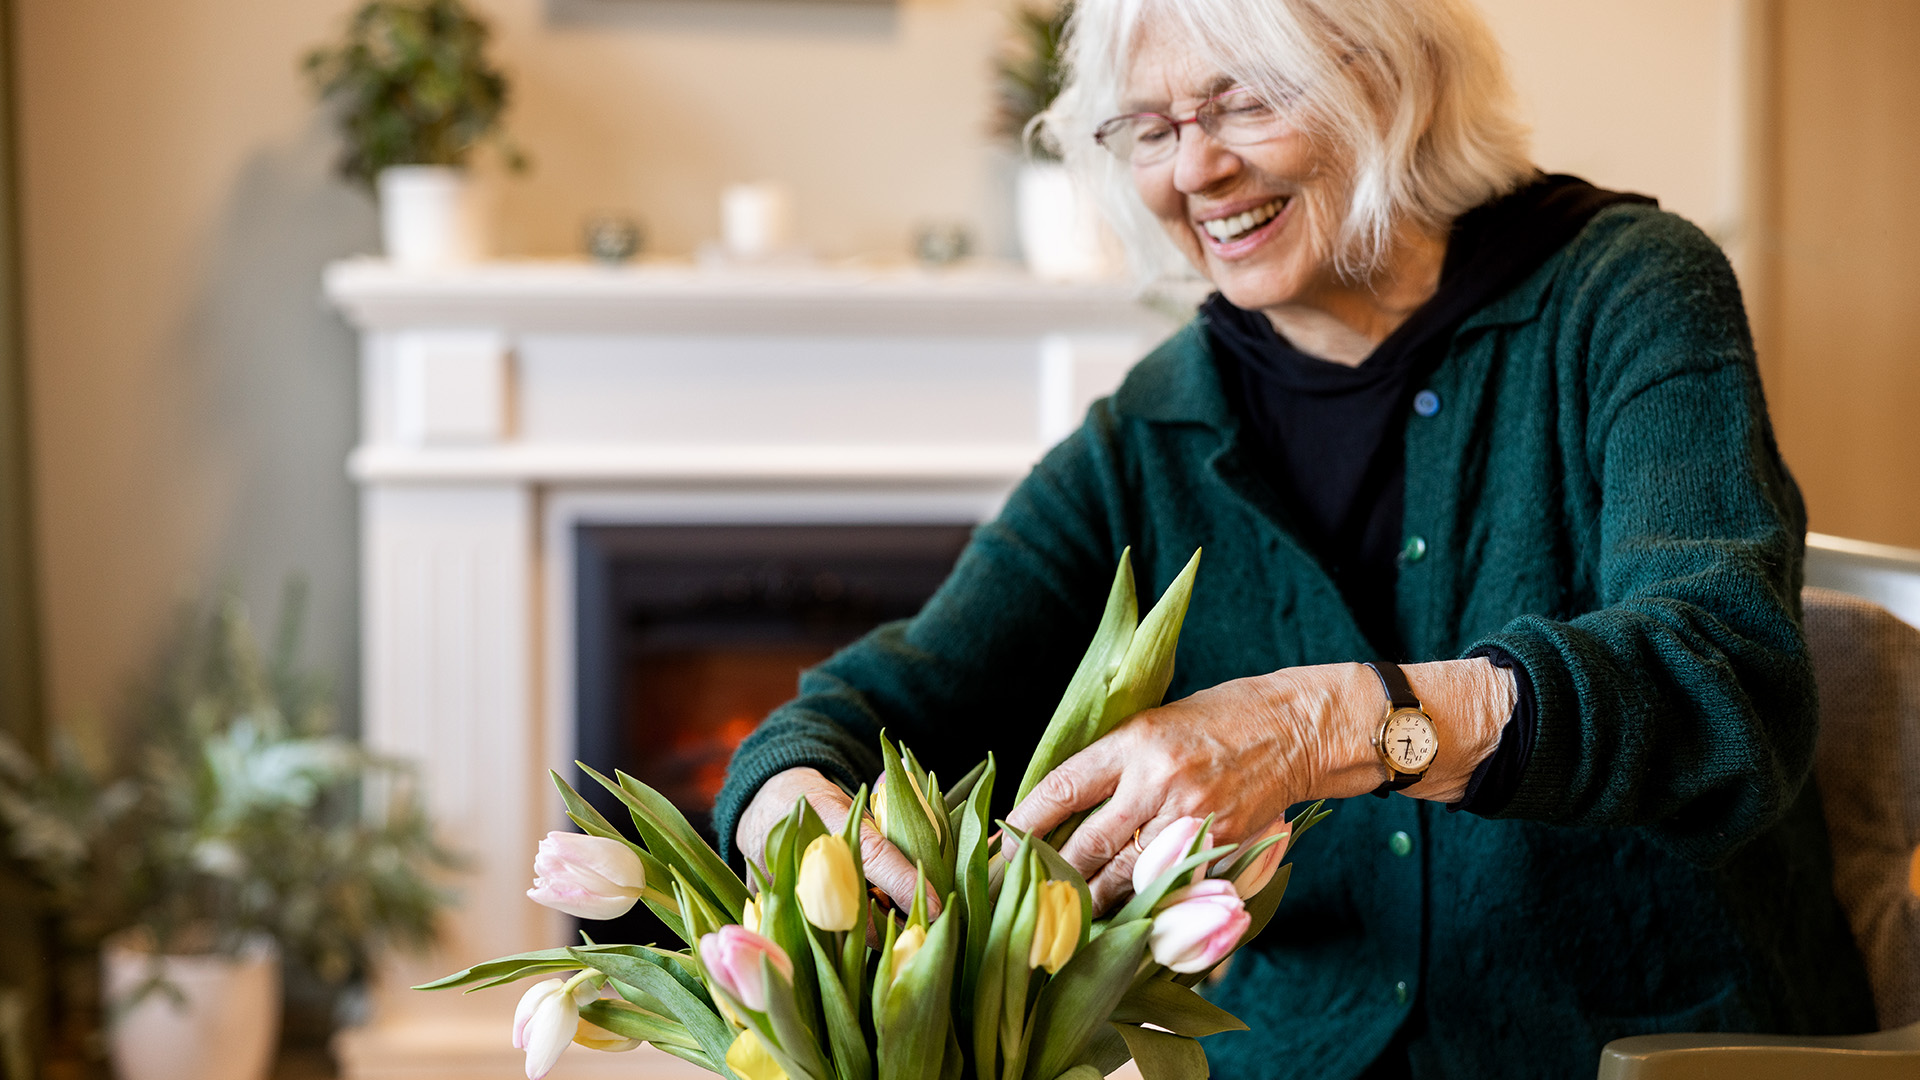 äldre kvinna arrangerar tulpaner i en vas